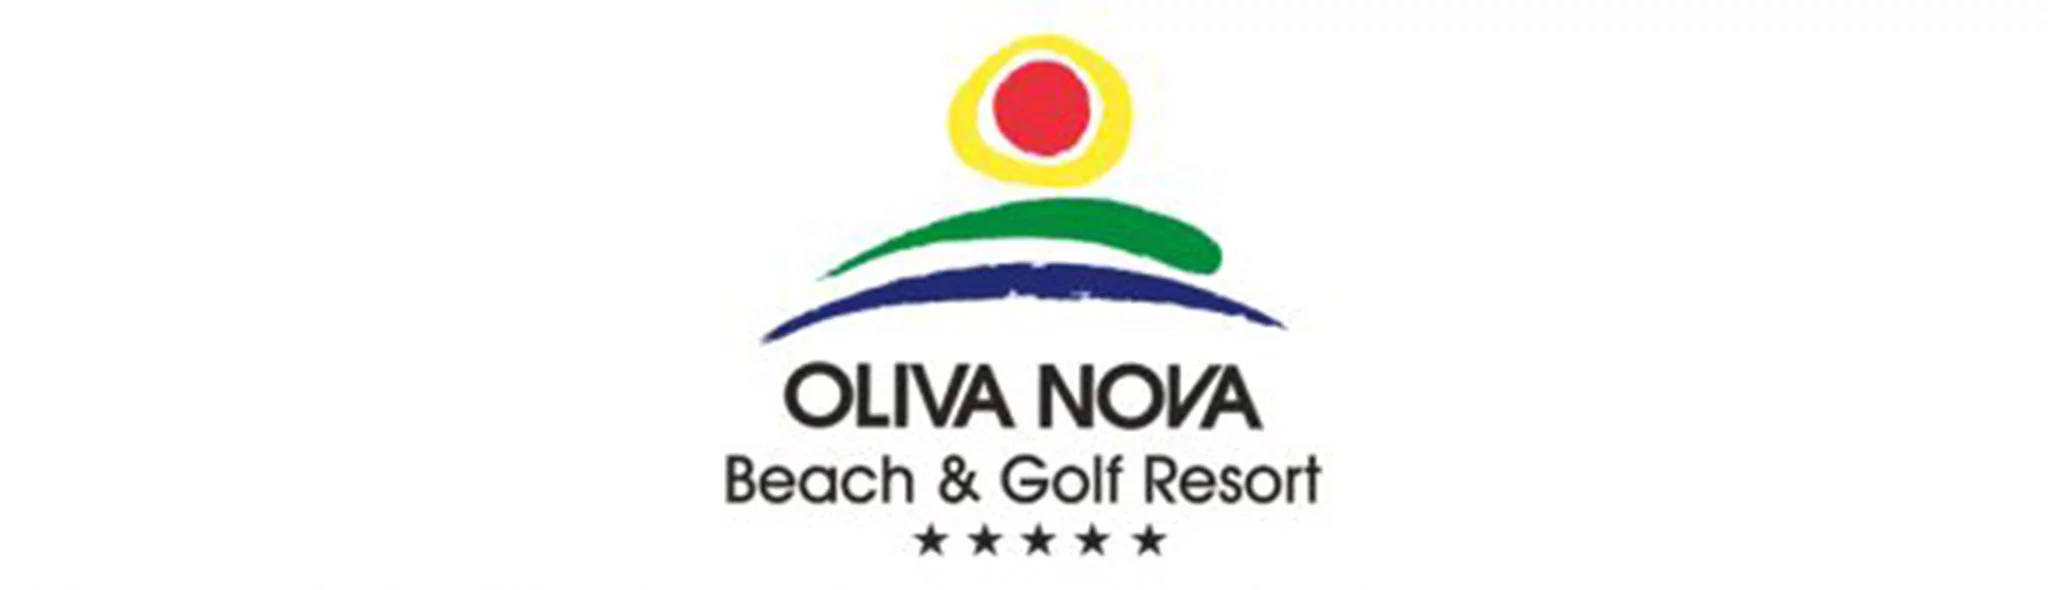 Logotipo Oliva Nova